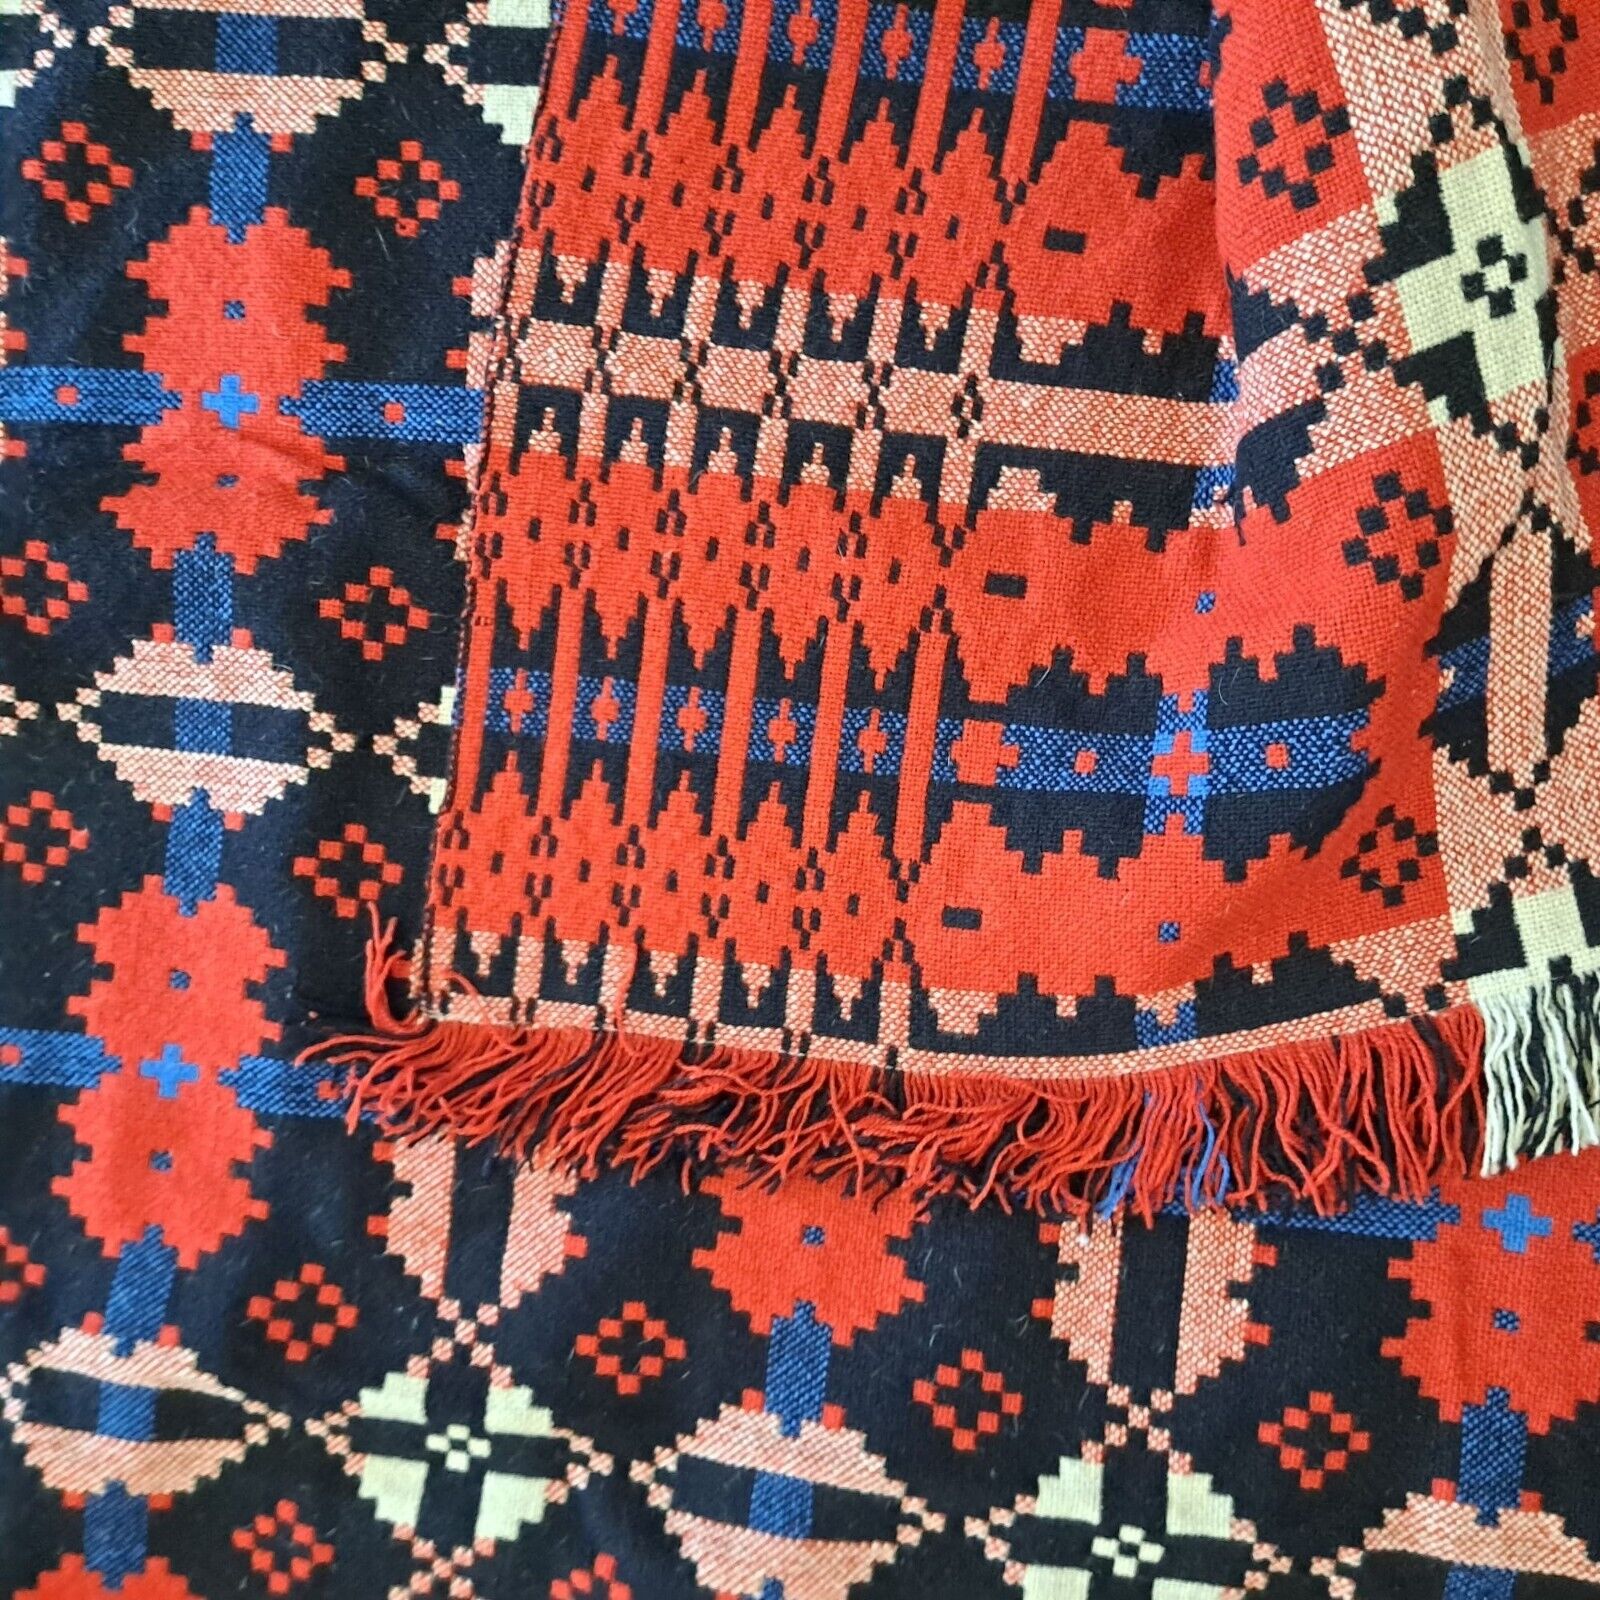 Vintage Mystic Valley Traders Wool Coverlet King Blanket Aztec United Kingdom